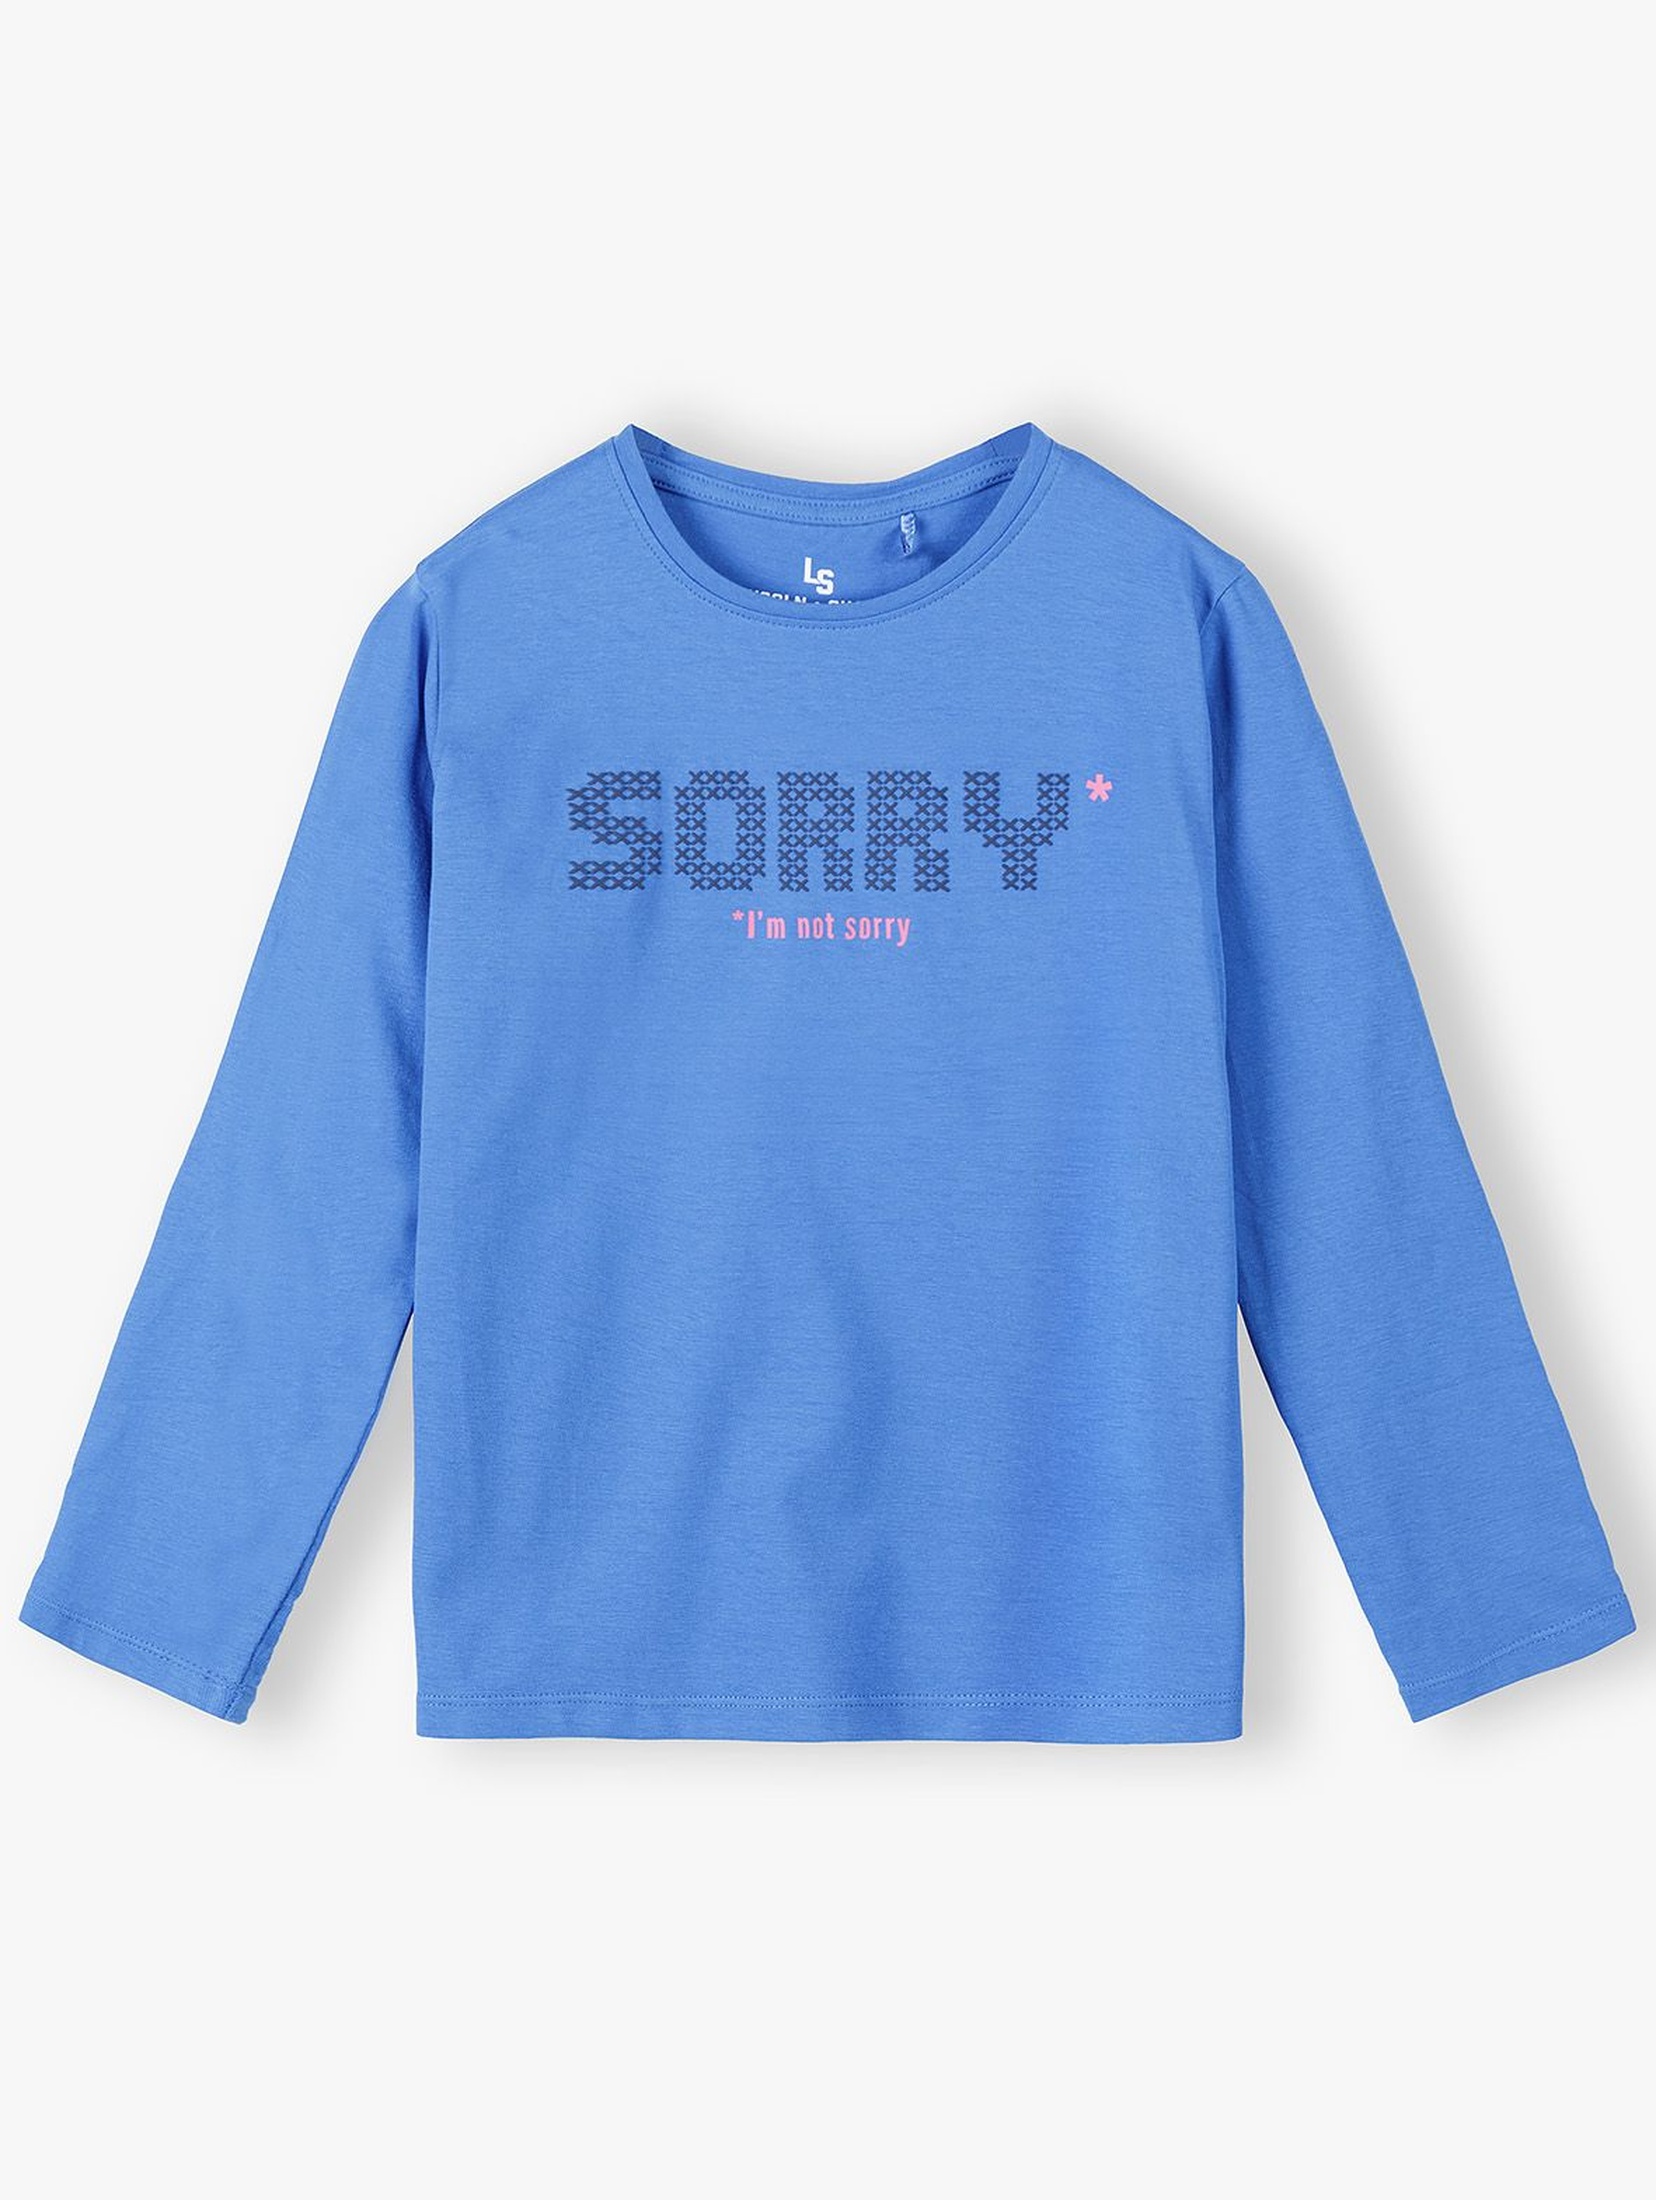 Bawełniana niebieska bluzka dziewczęca z napisem Sorry